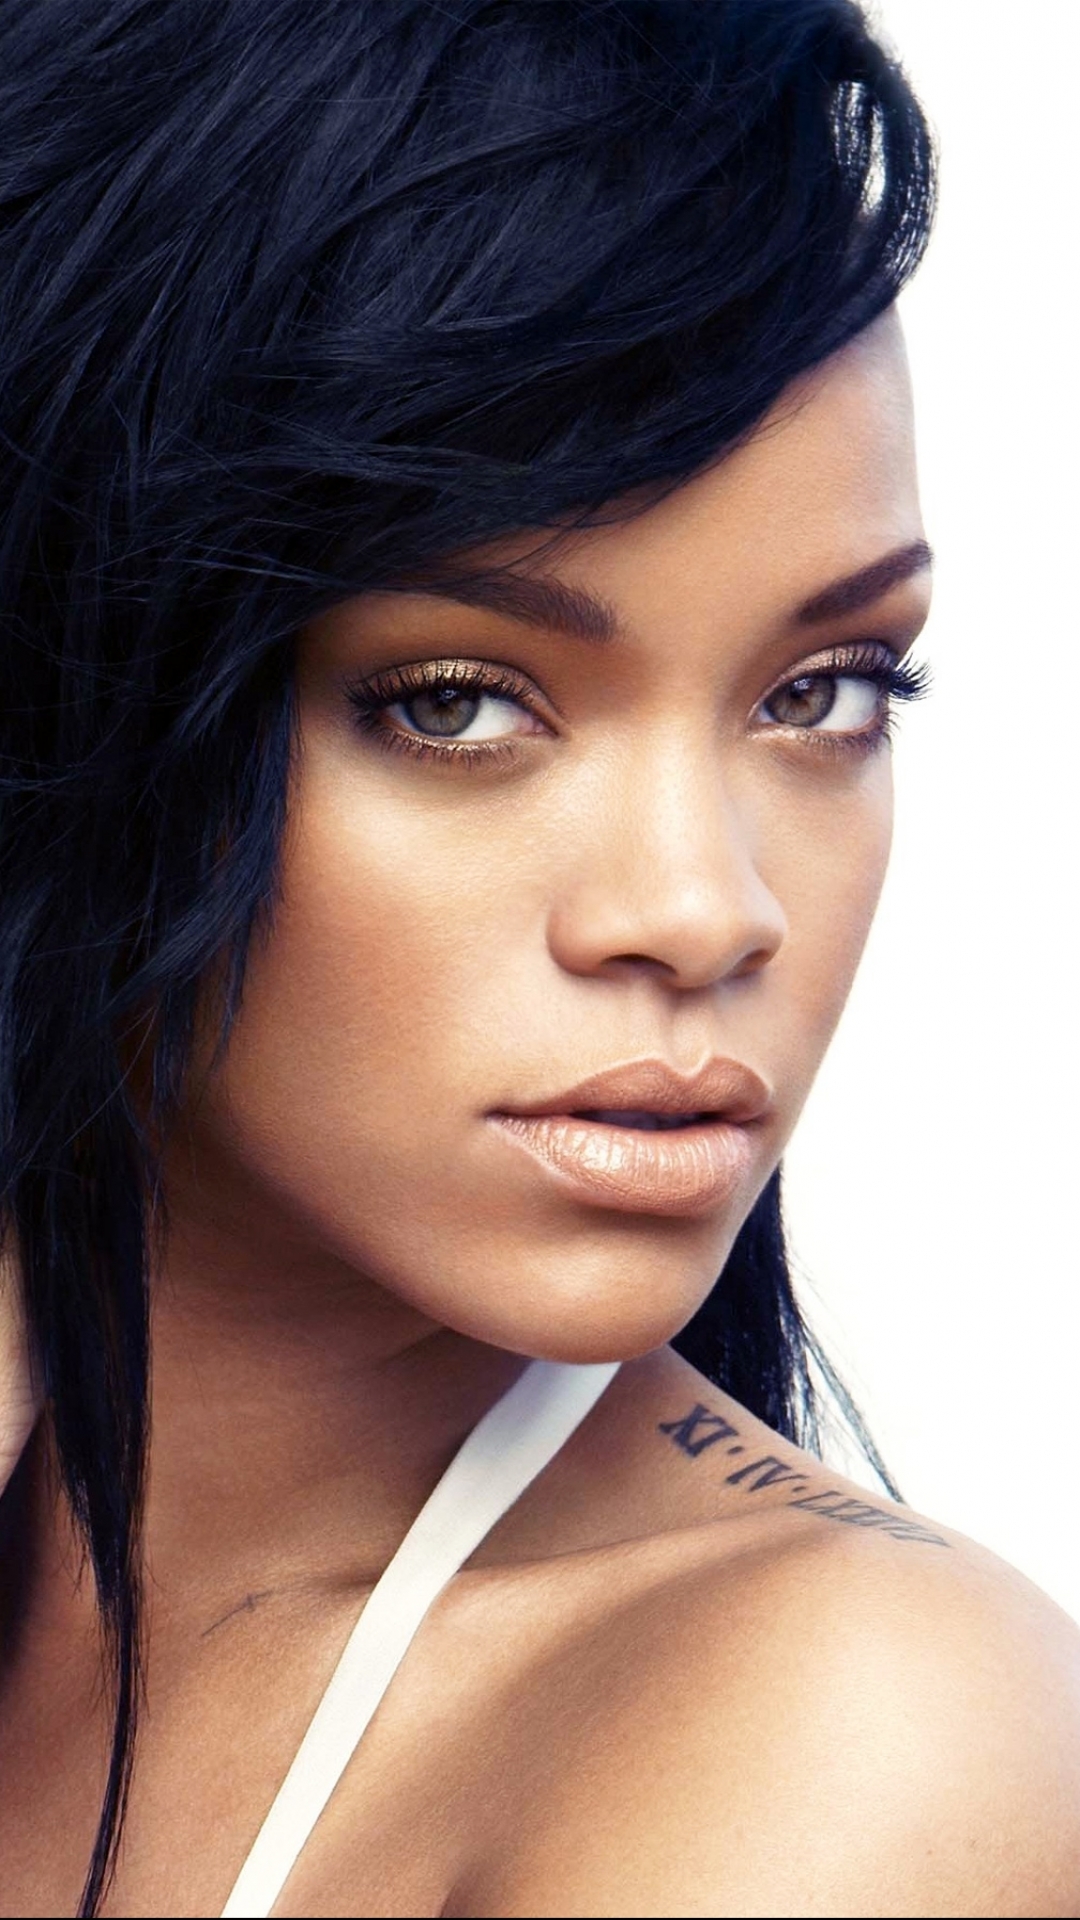 Descarga gratuita de fondo de pantalla para móvil de Música, Rihanna.